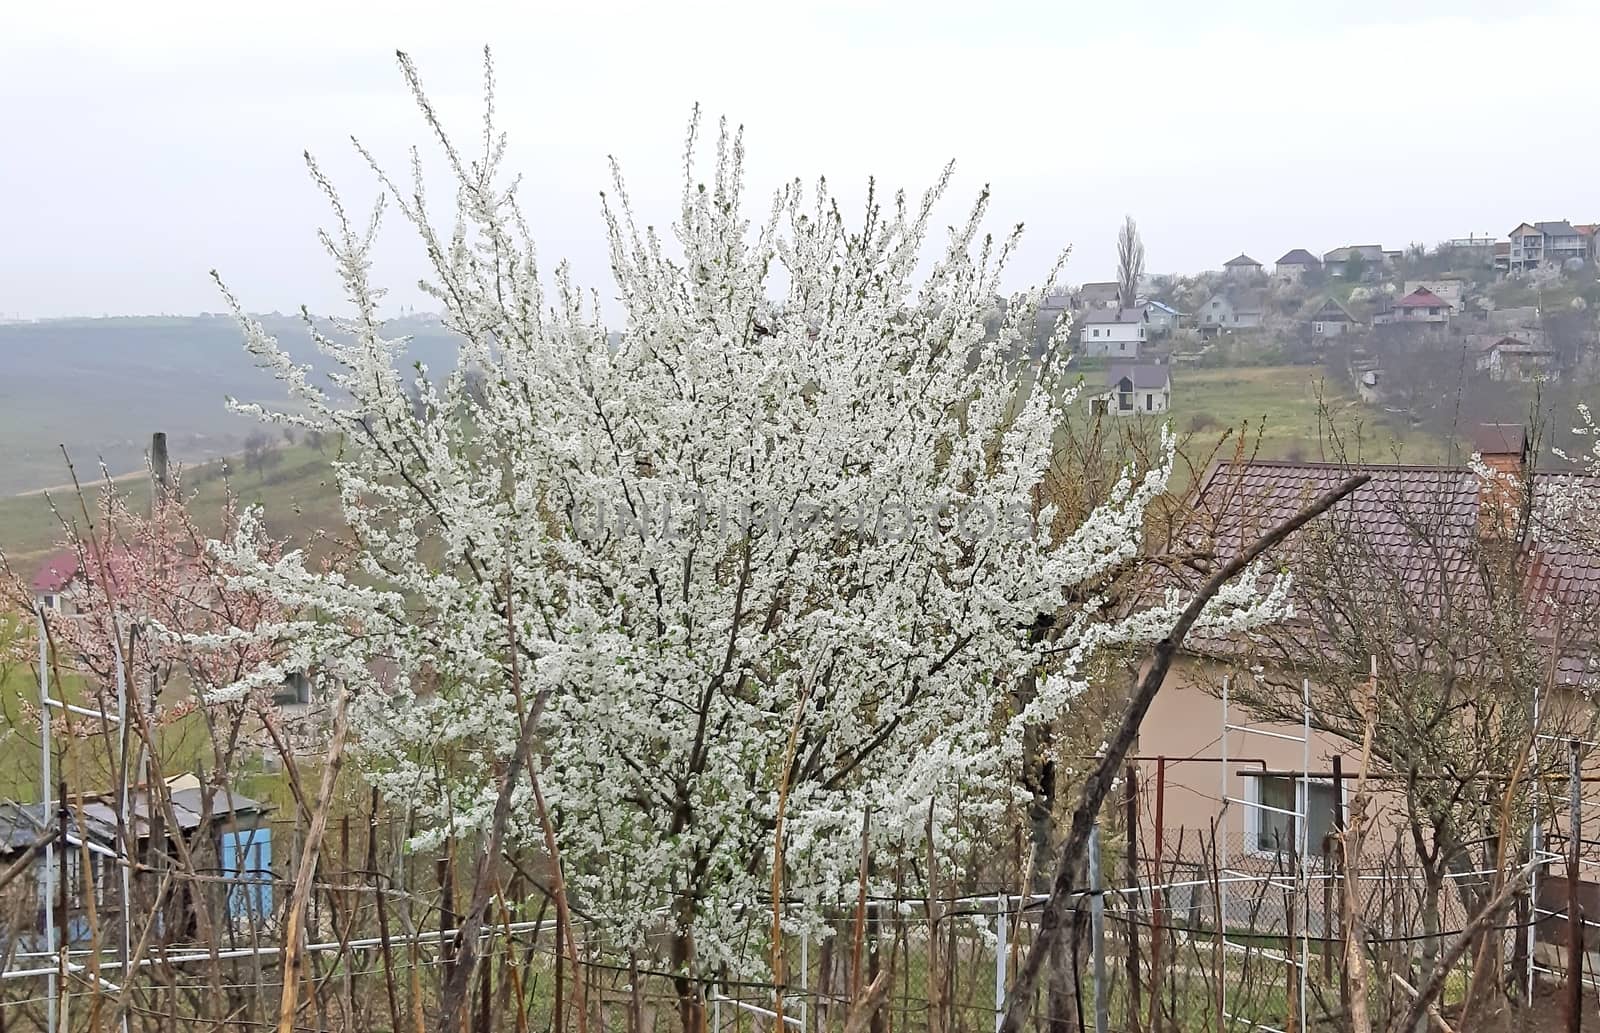 Tree full of flowers in the spring. Prunus cerasifera by Mindru